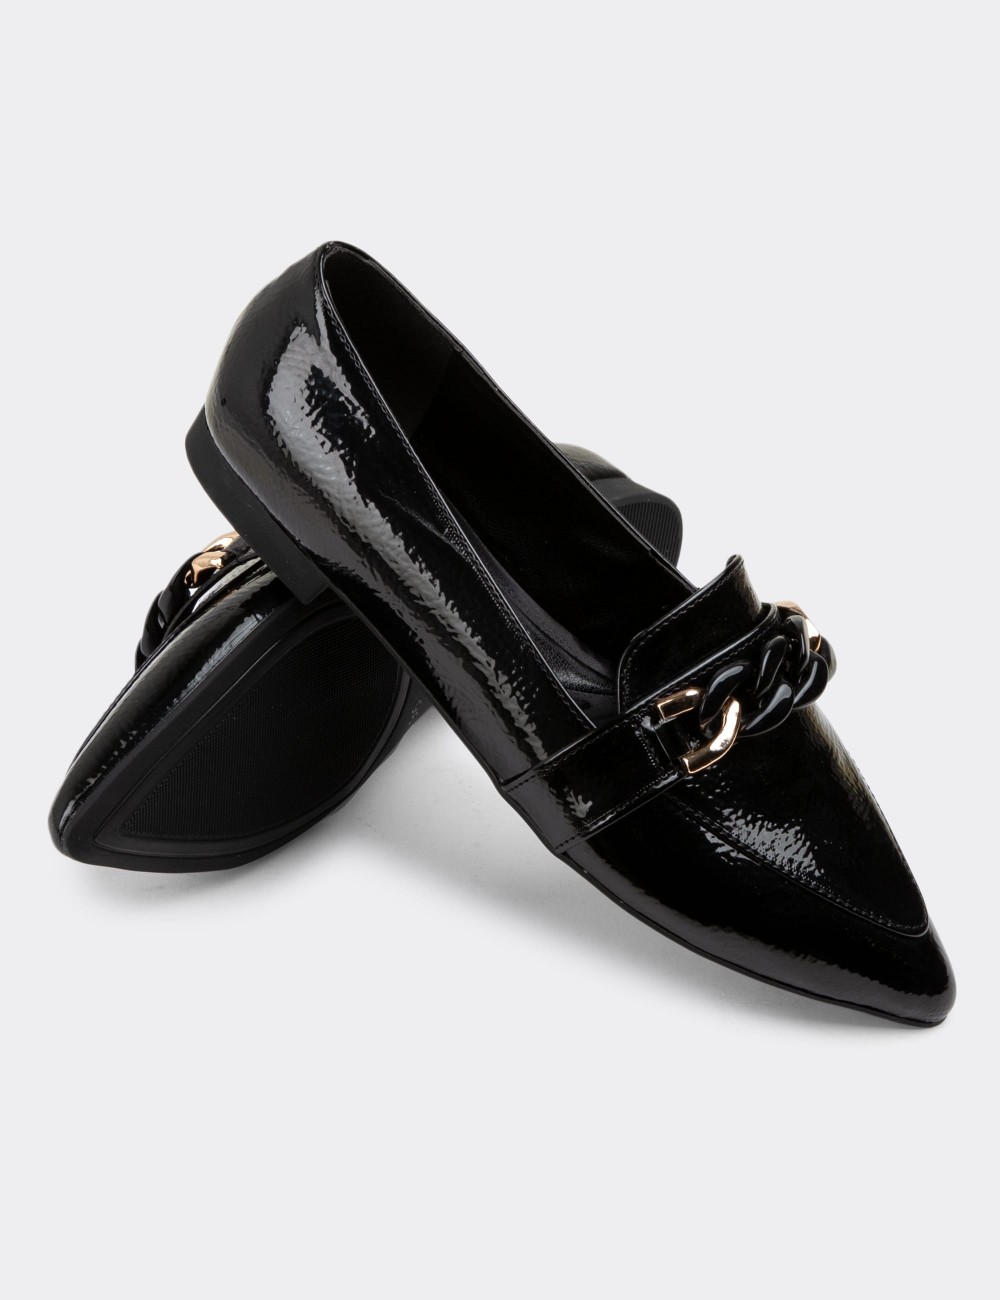 Black Patent Loafers - 38606ZSYHC01